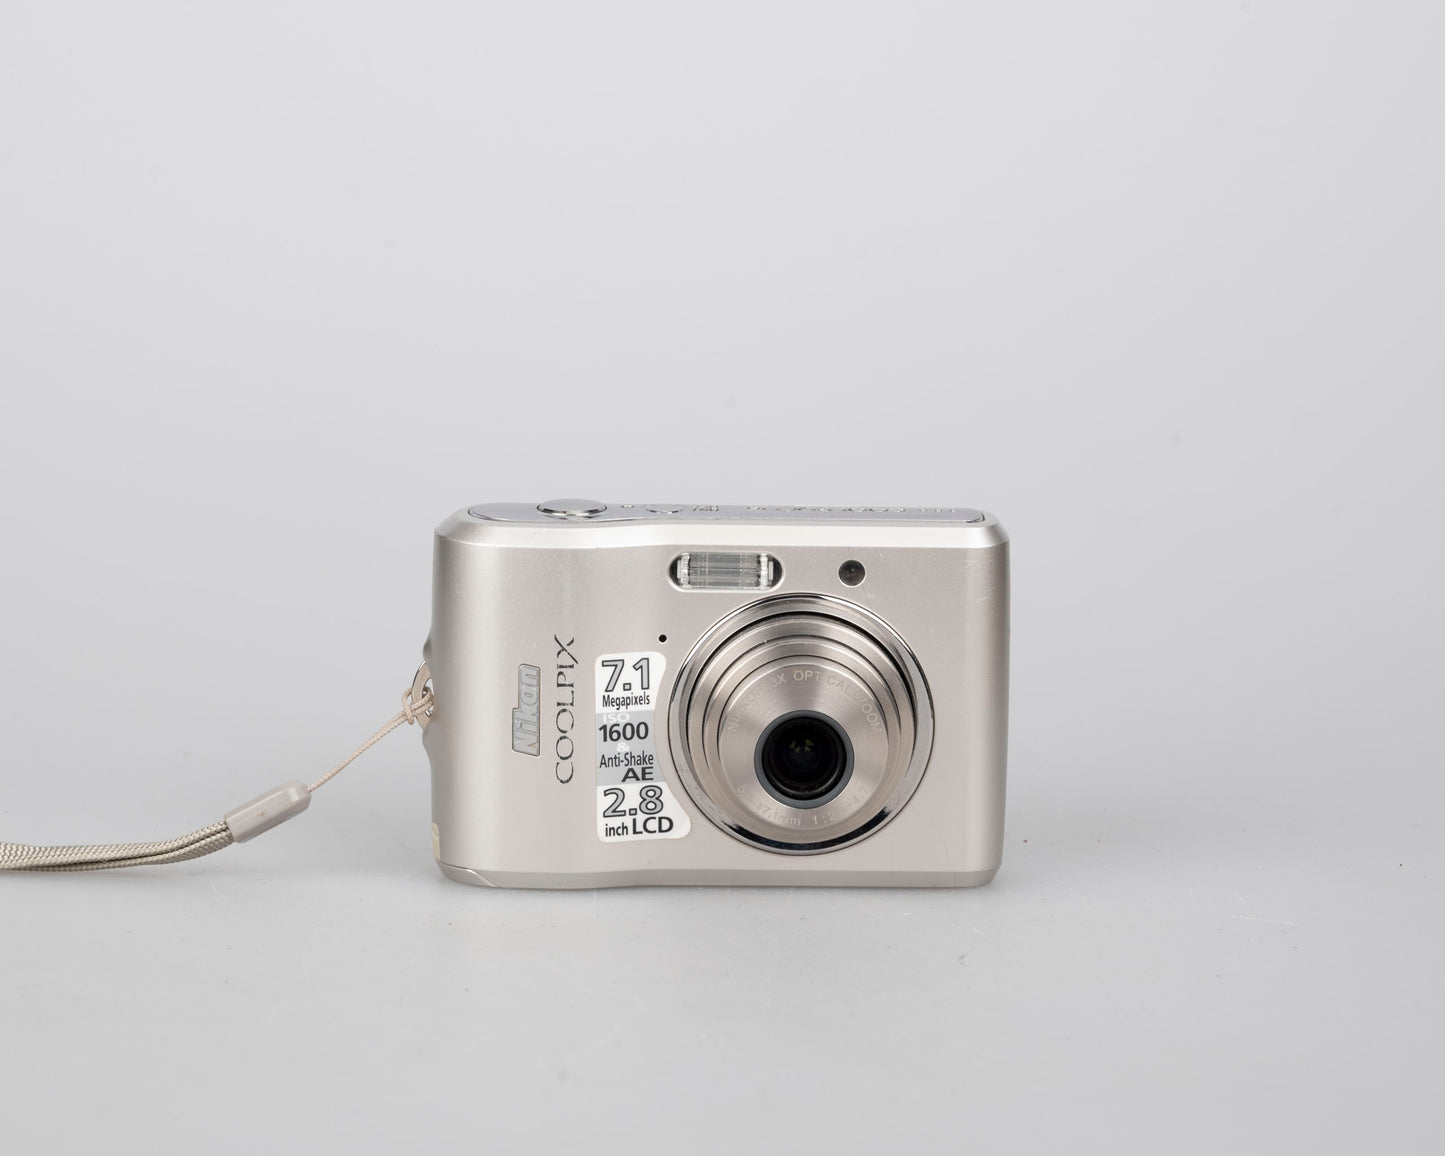 Appareil photo numérique à capteur CCD Nikon Coolpix L16 7,1 MP avec carte SD de 1 Go + boîte d'origine et accessoires (utilise des piles AA)